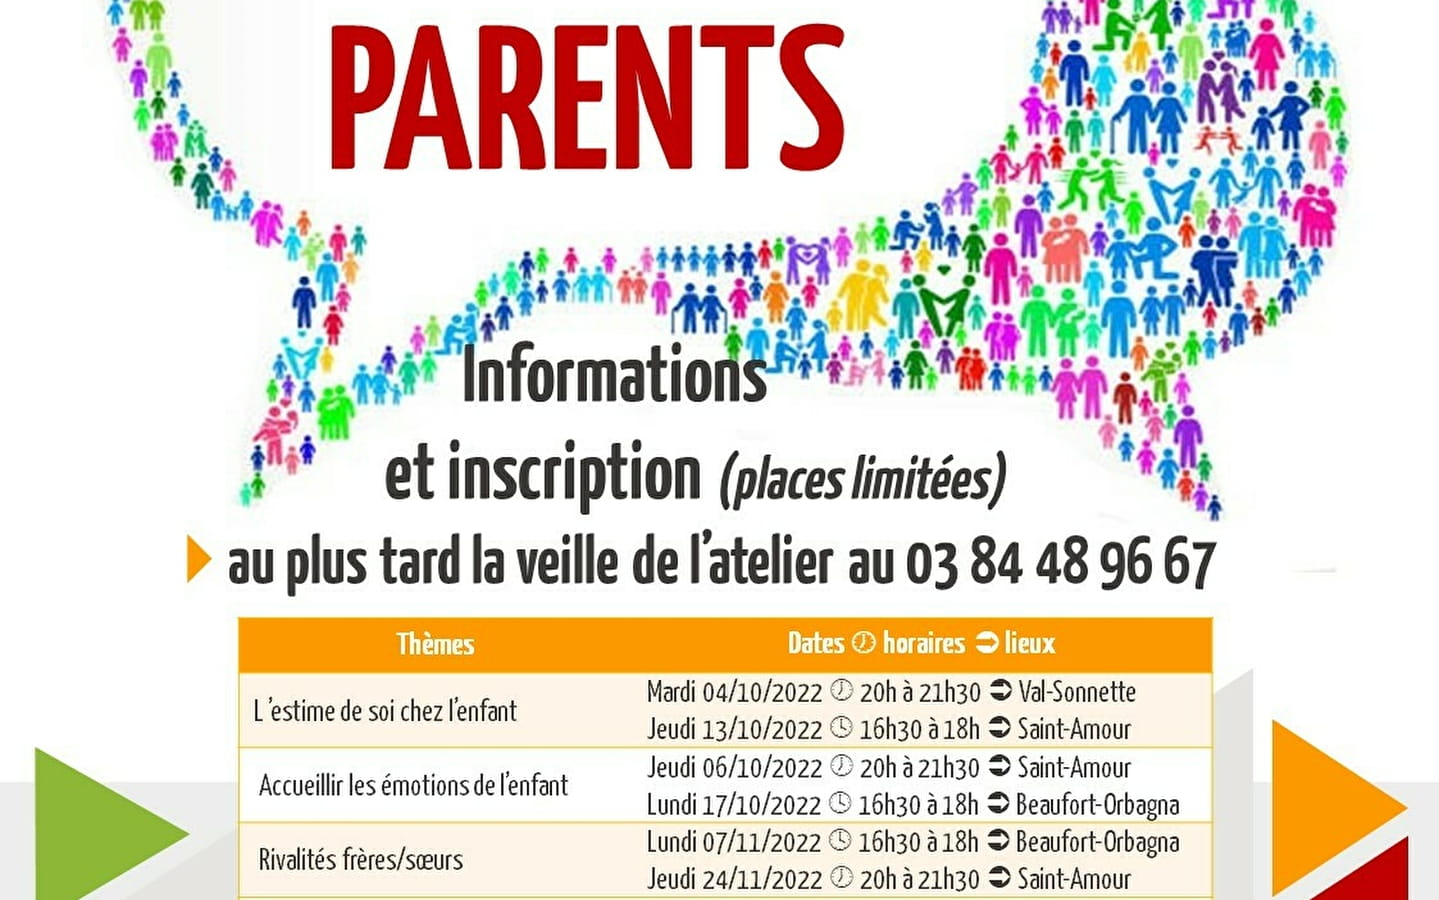 Ateliers Parents à Beaufort-Orbagna